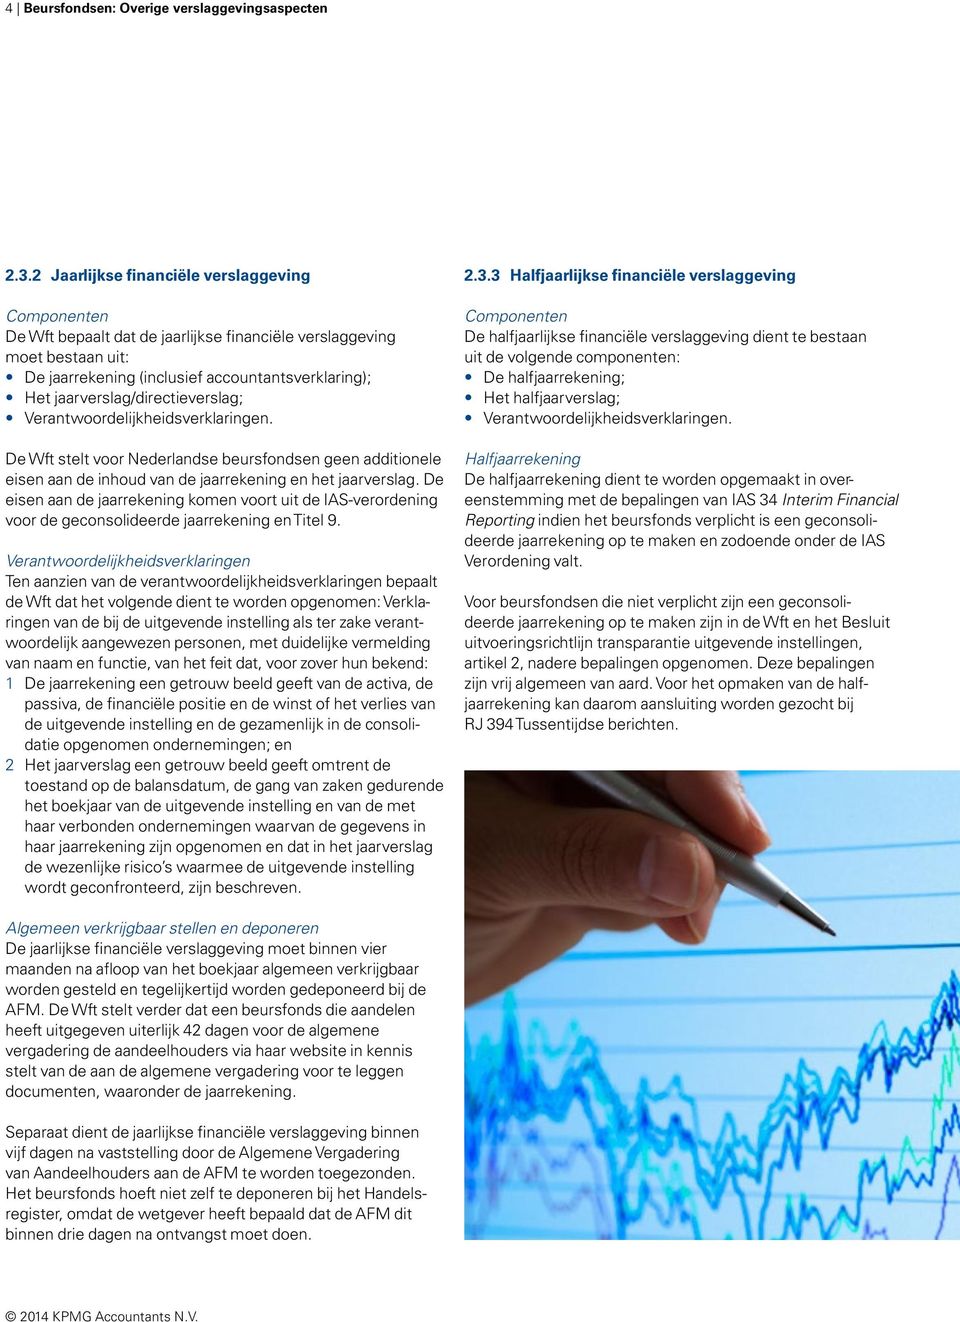 jaarverslag/directieverslag; Verantwoordelijkheidsverklaringen. De Wft stelt voor Nederlandse beursfondsen geen additionele eisen aan de inhoud van de jaarrekening en het jaarverslag.